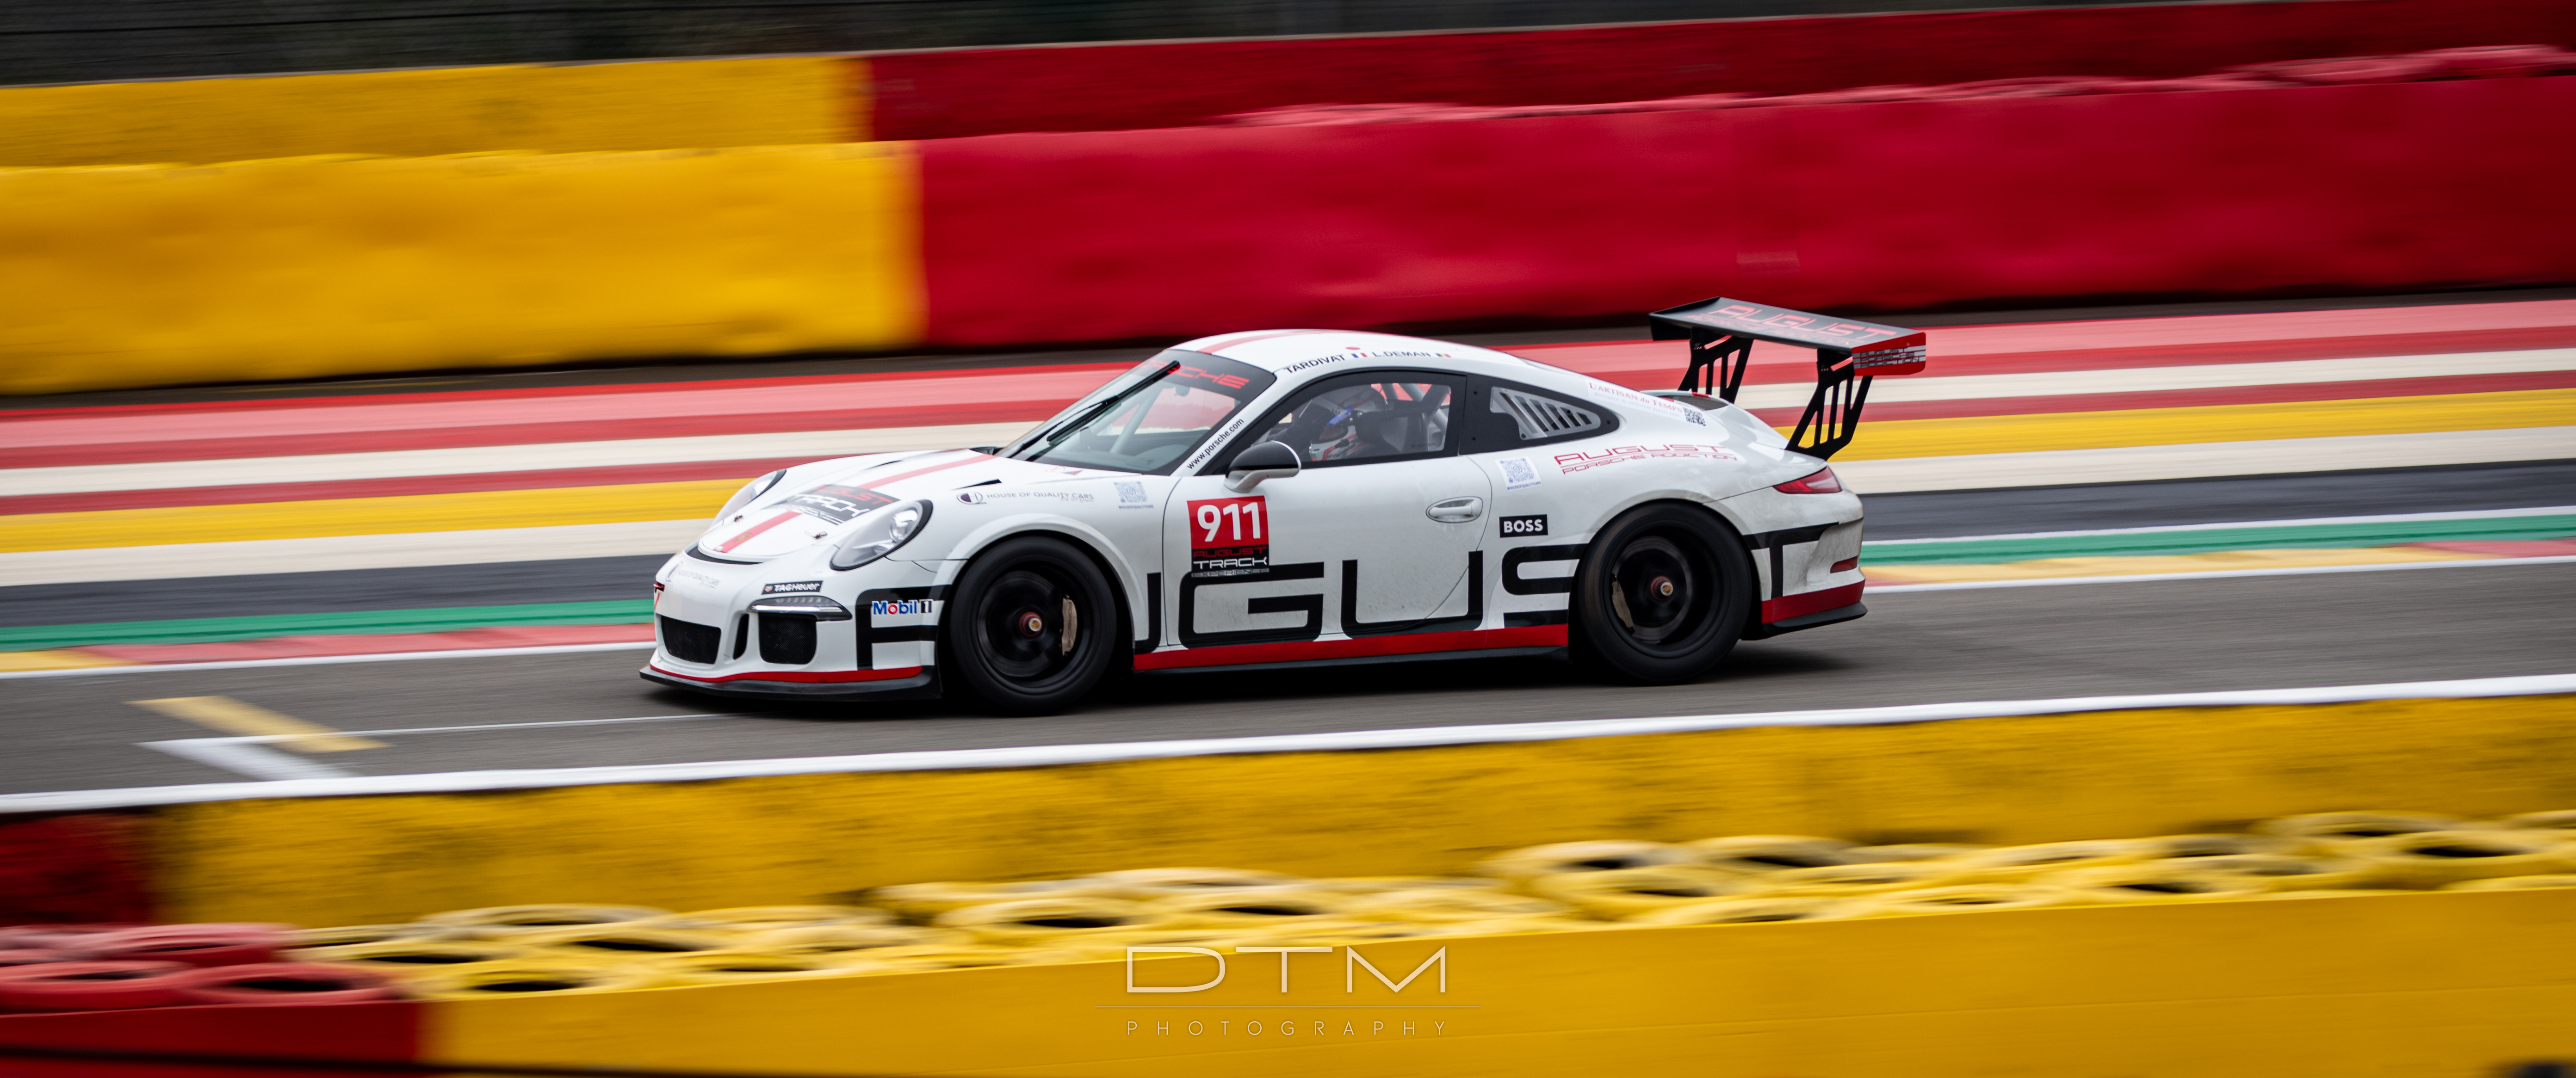 General 5568x2331 Spa-Francorchamps Porsche Porsche 911 dtm photography car side view race tracks race cars